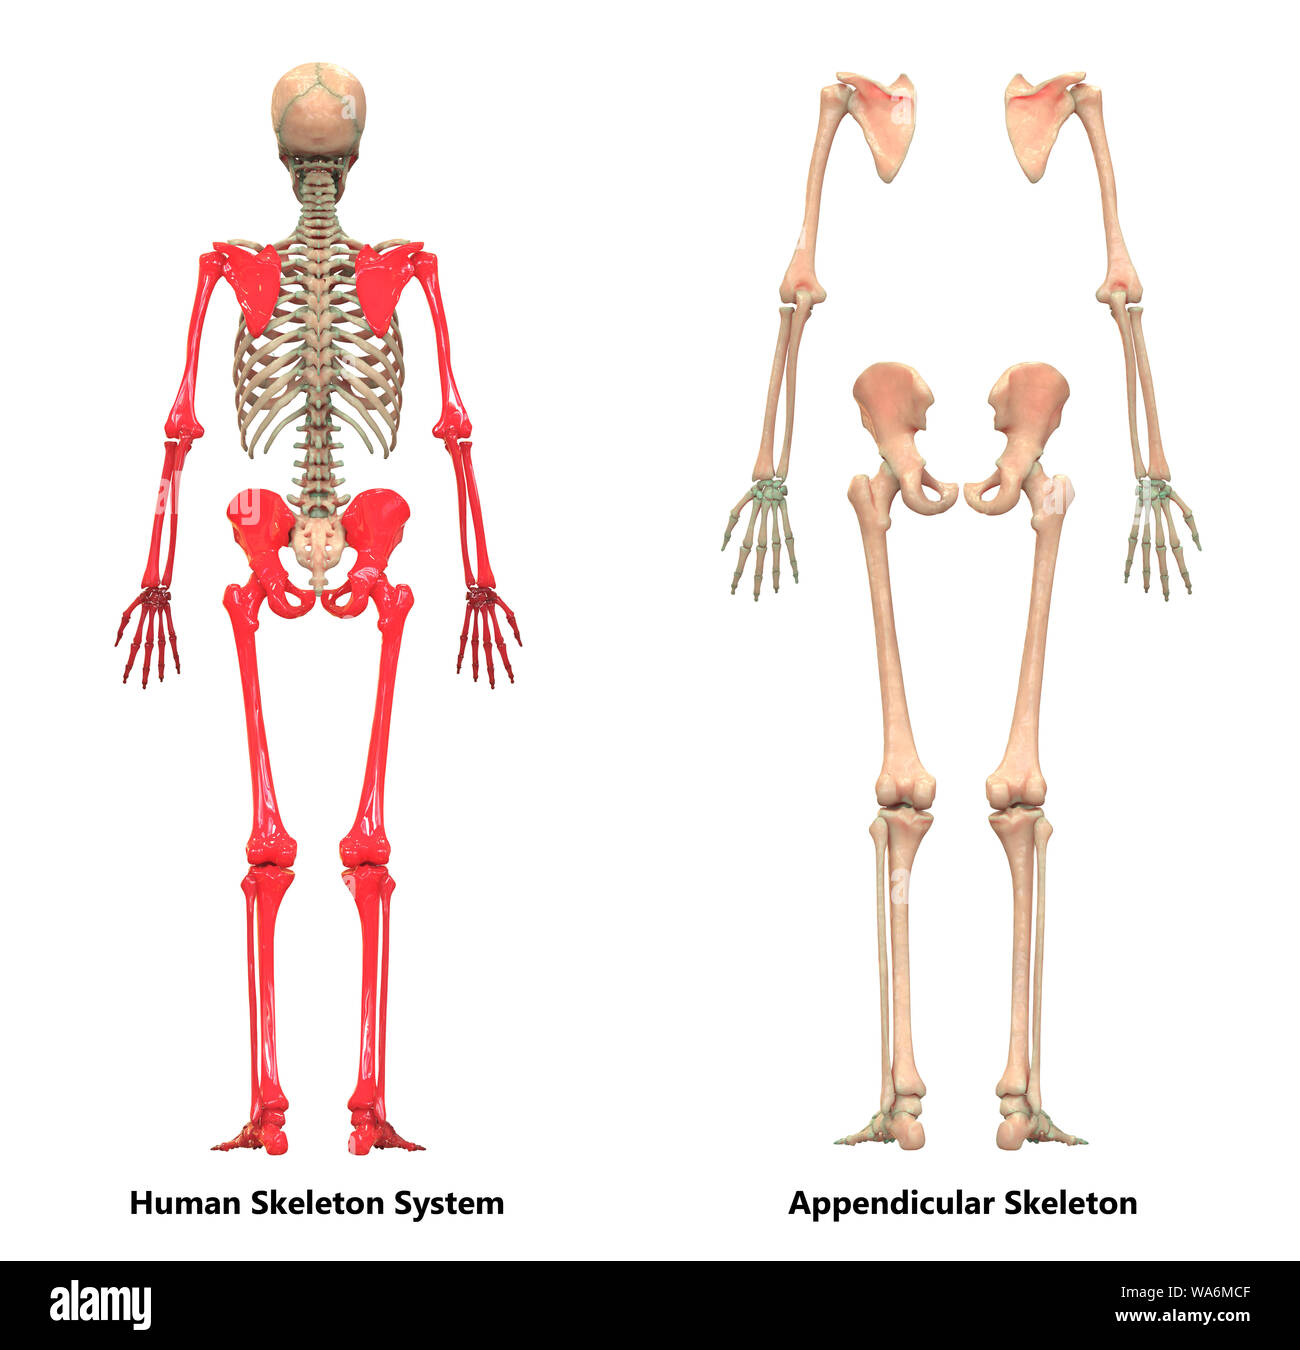 Menschliches Skelett System Appendicular Skelett Anatomie Stockfoto